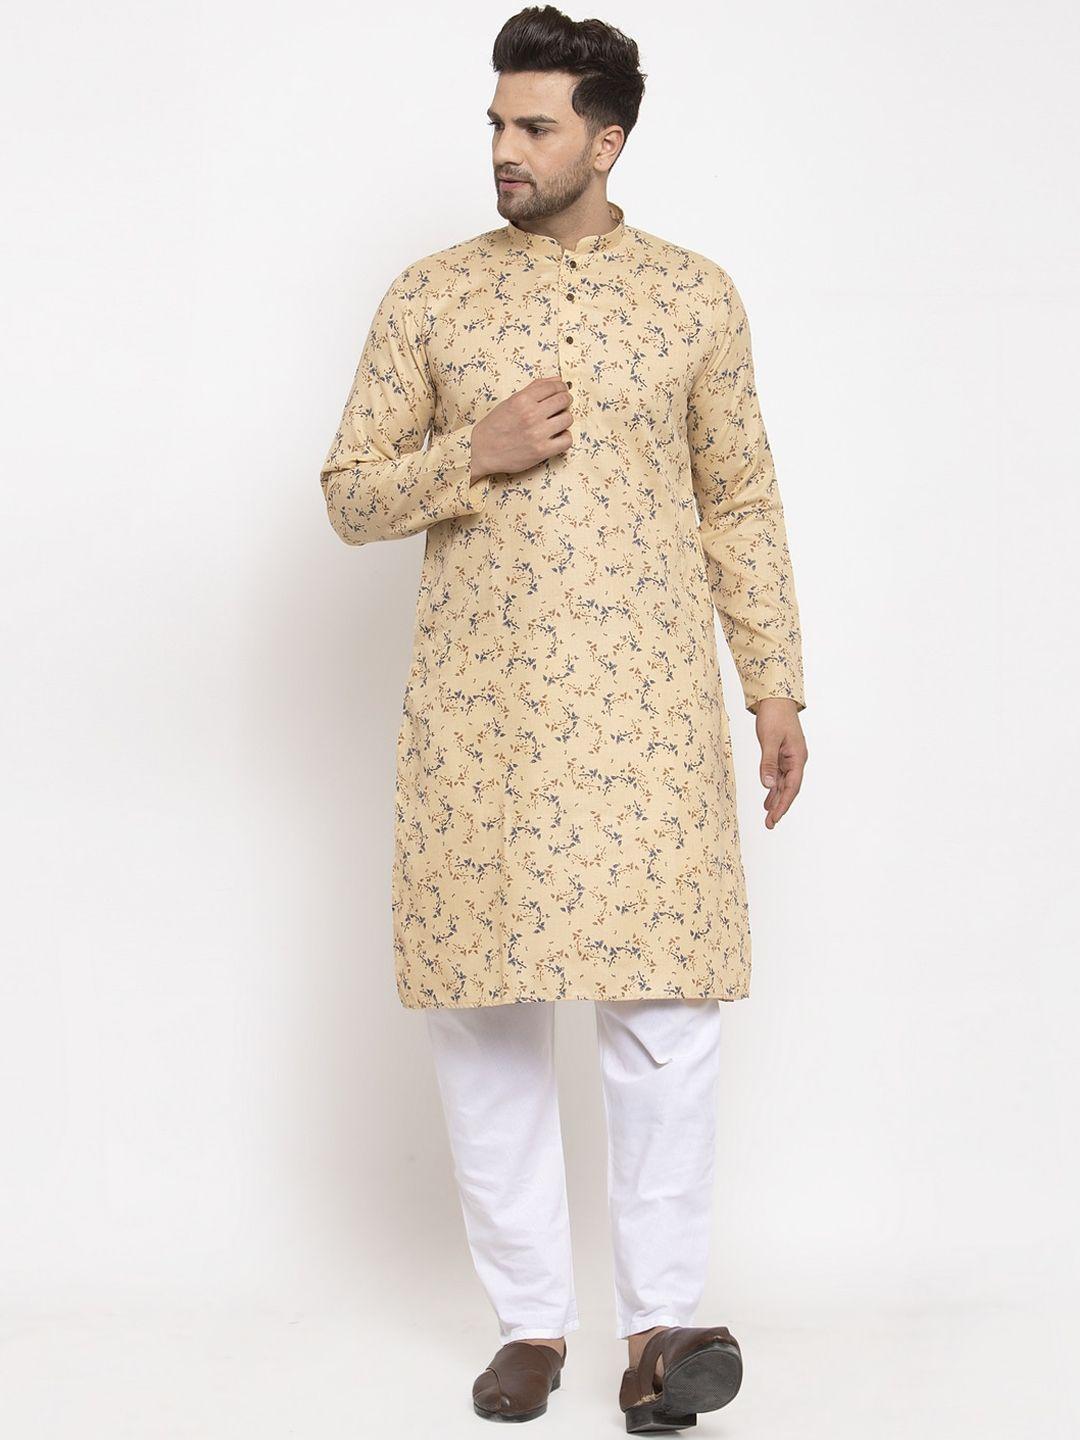 kraft-india-men-beige-&-white-ethnic-motifs-printed-regular-kurta-with-pyjamas